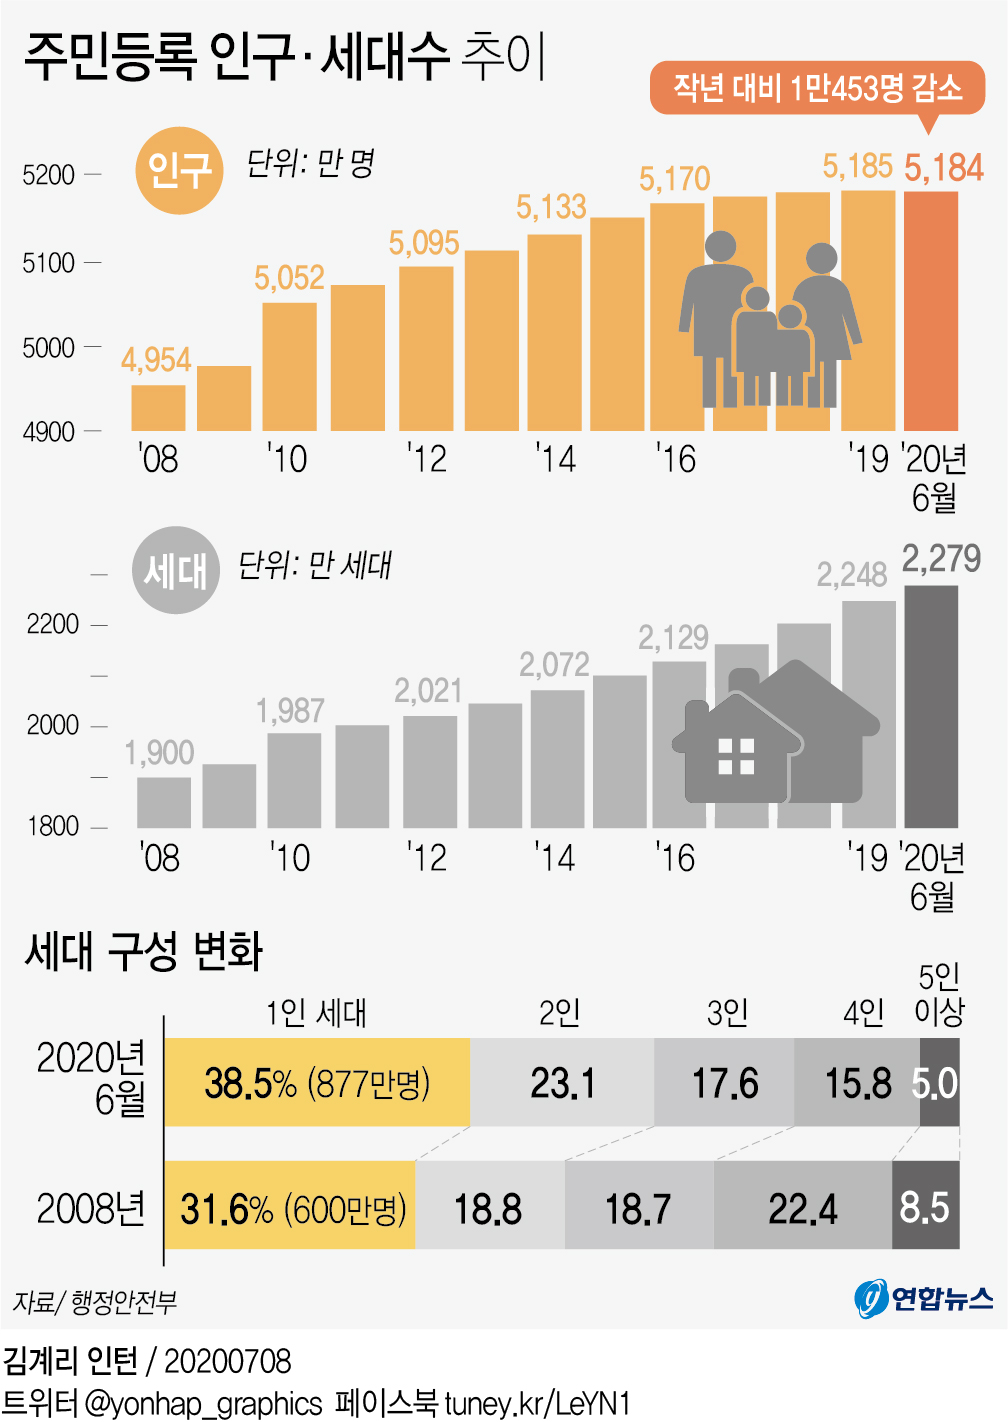 [그래픽] 주민등록 인구·세대수 추이